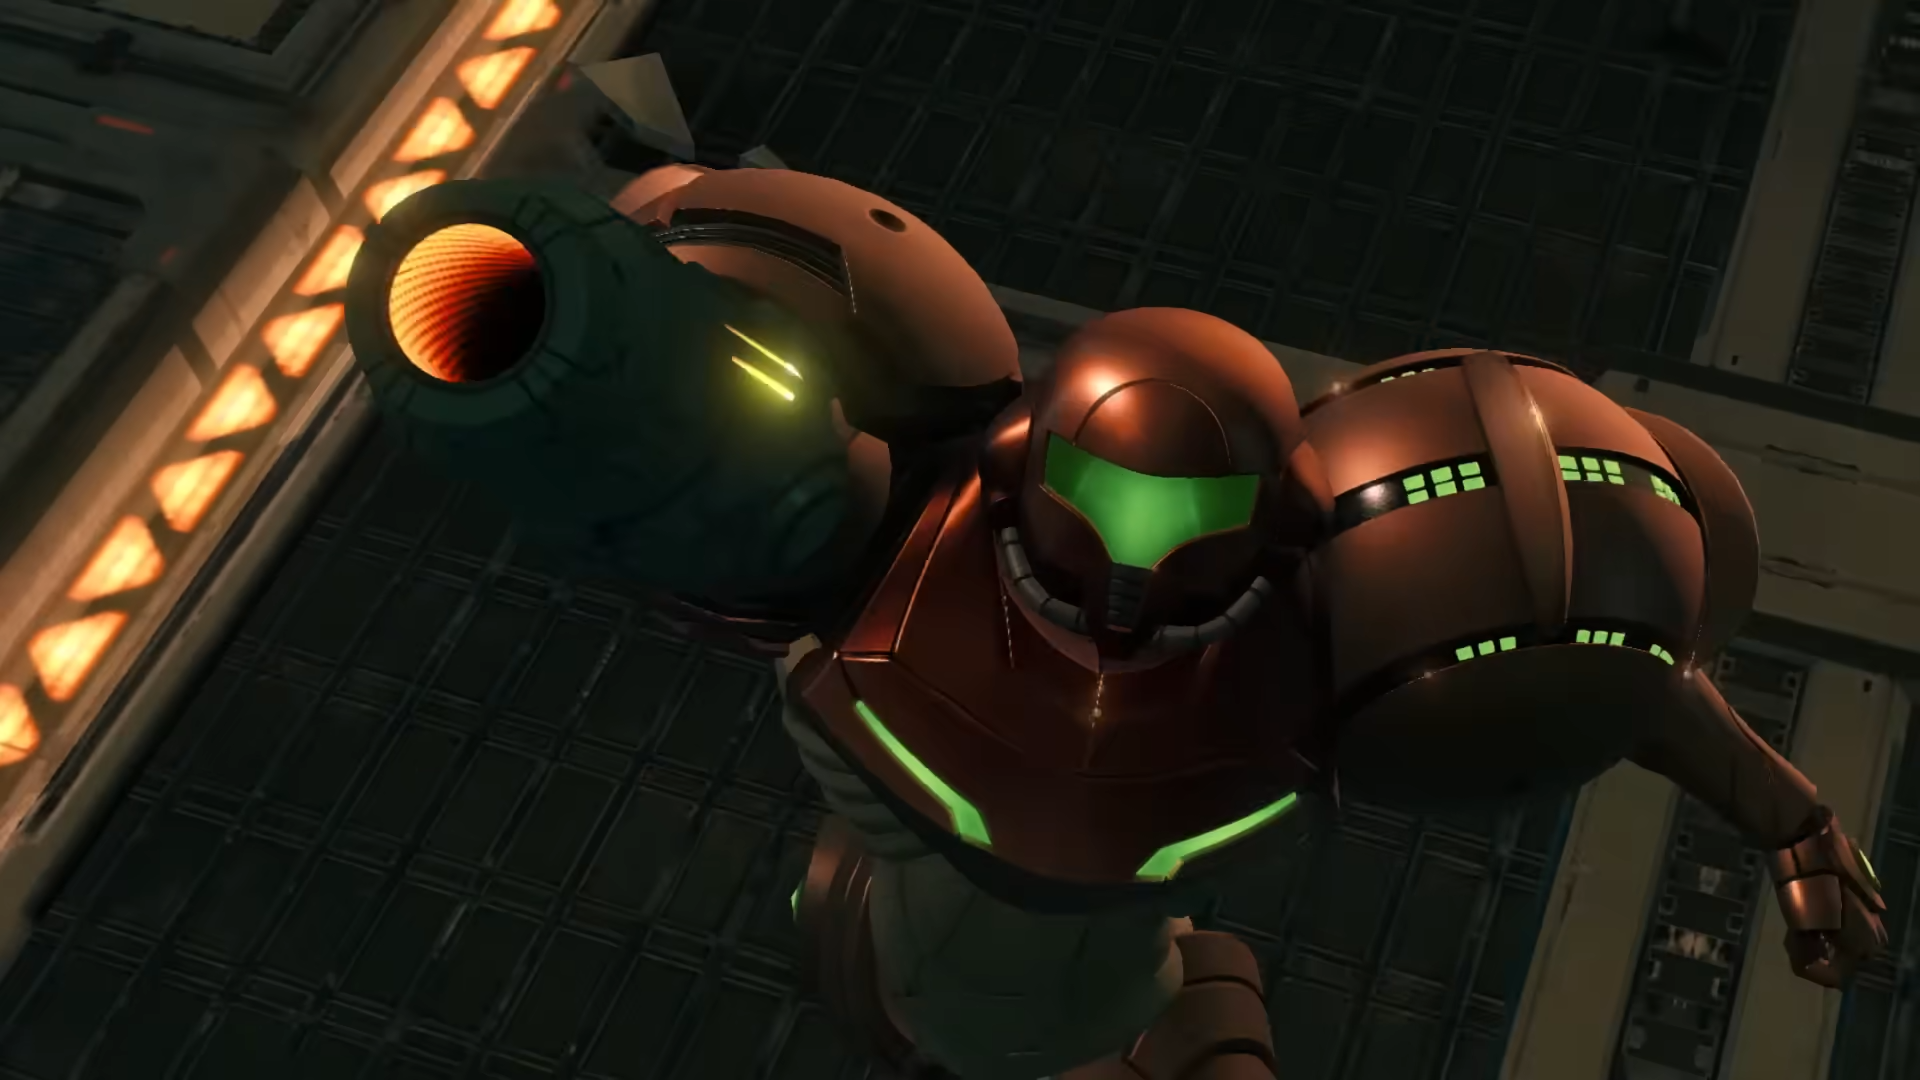 Samus close up in Metroid Prime Remastered